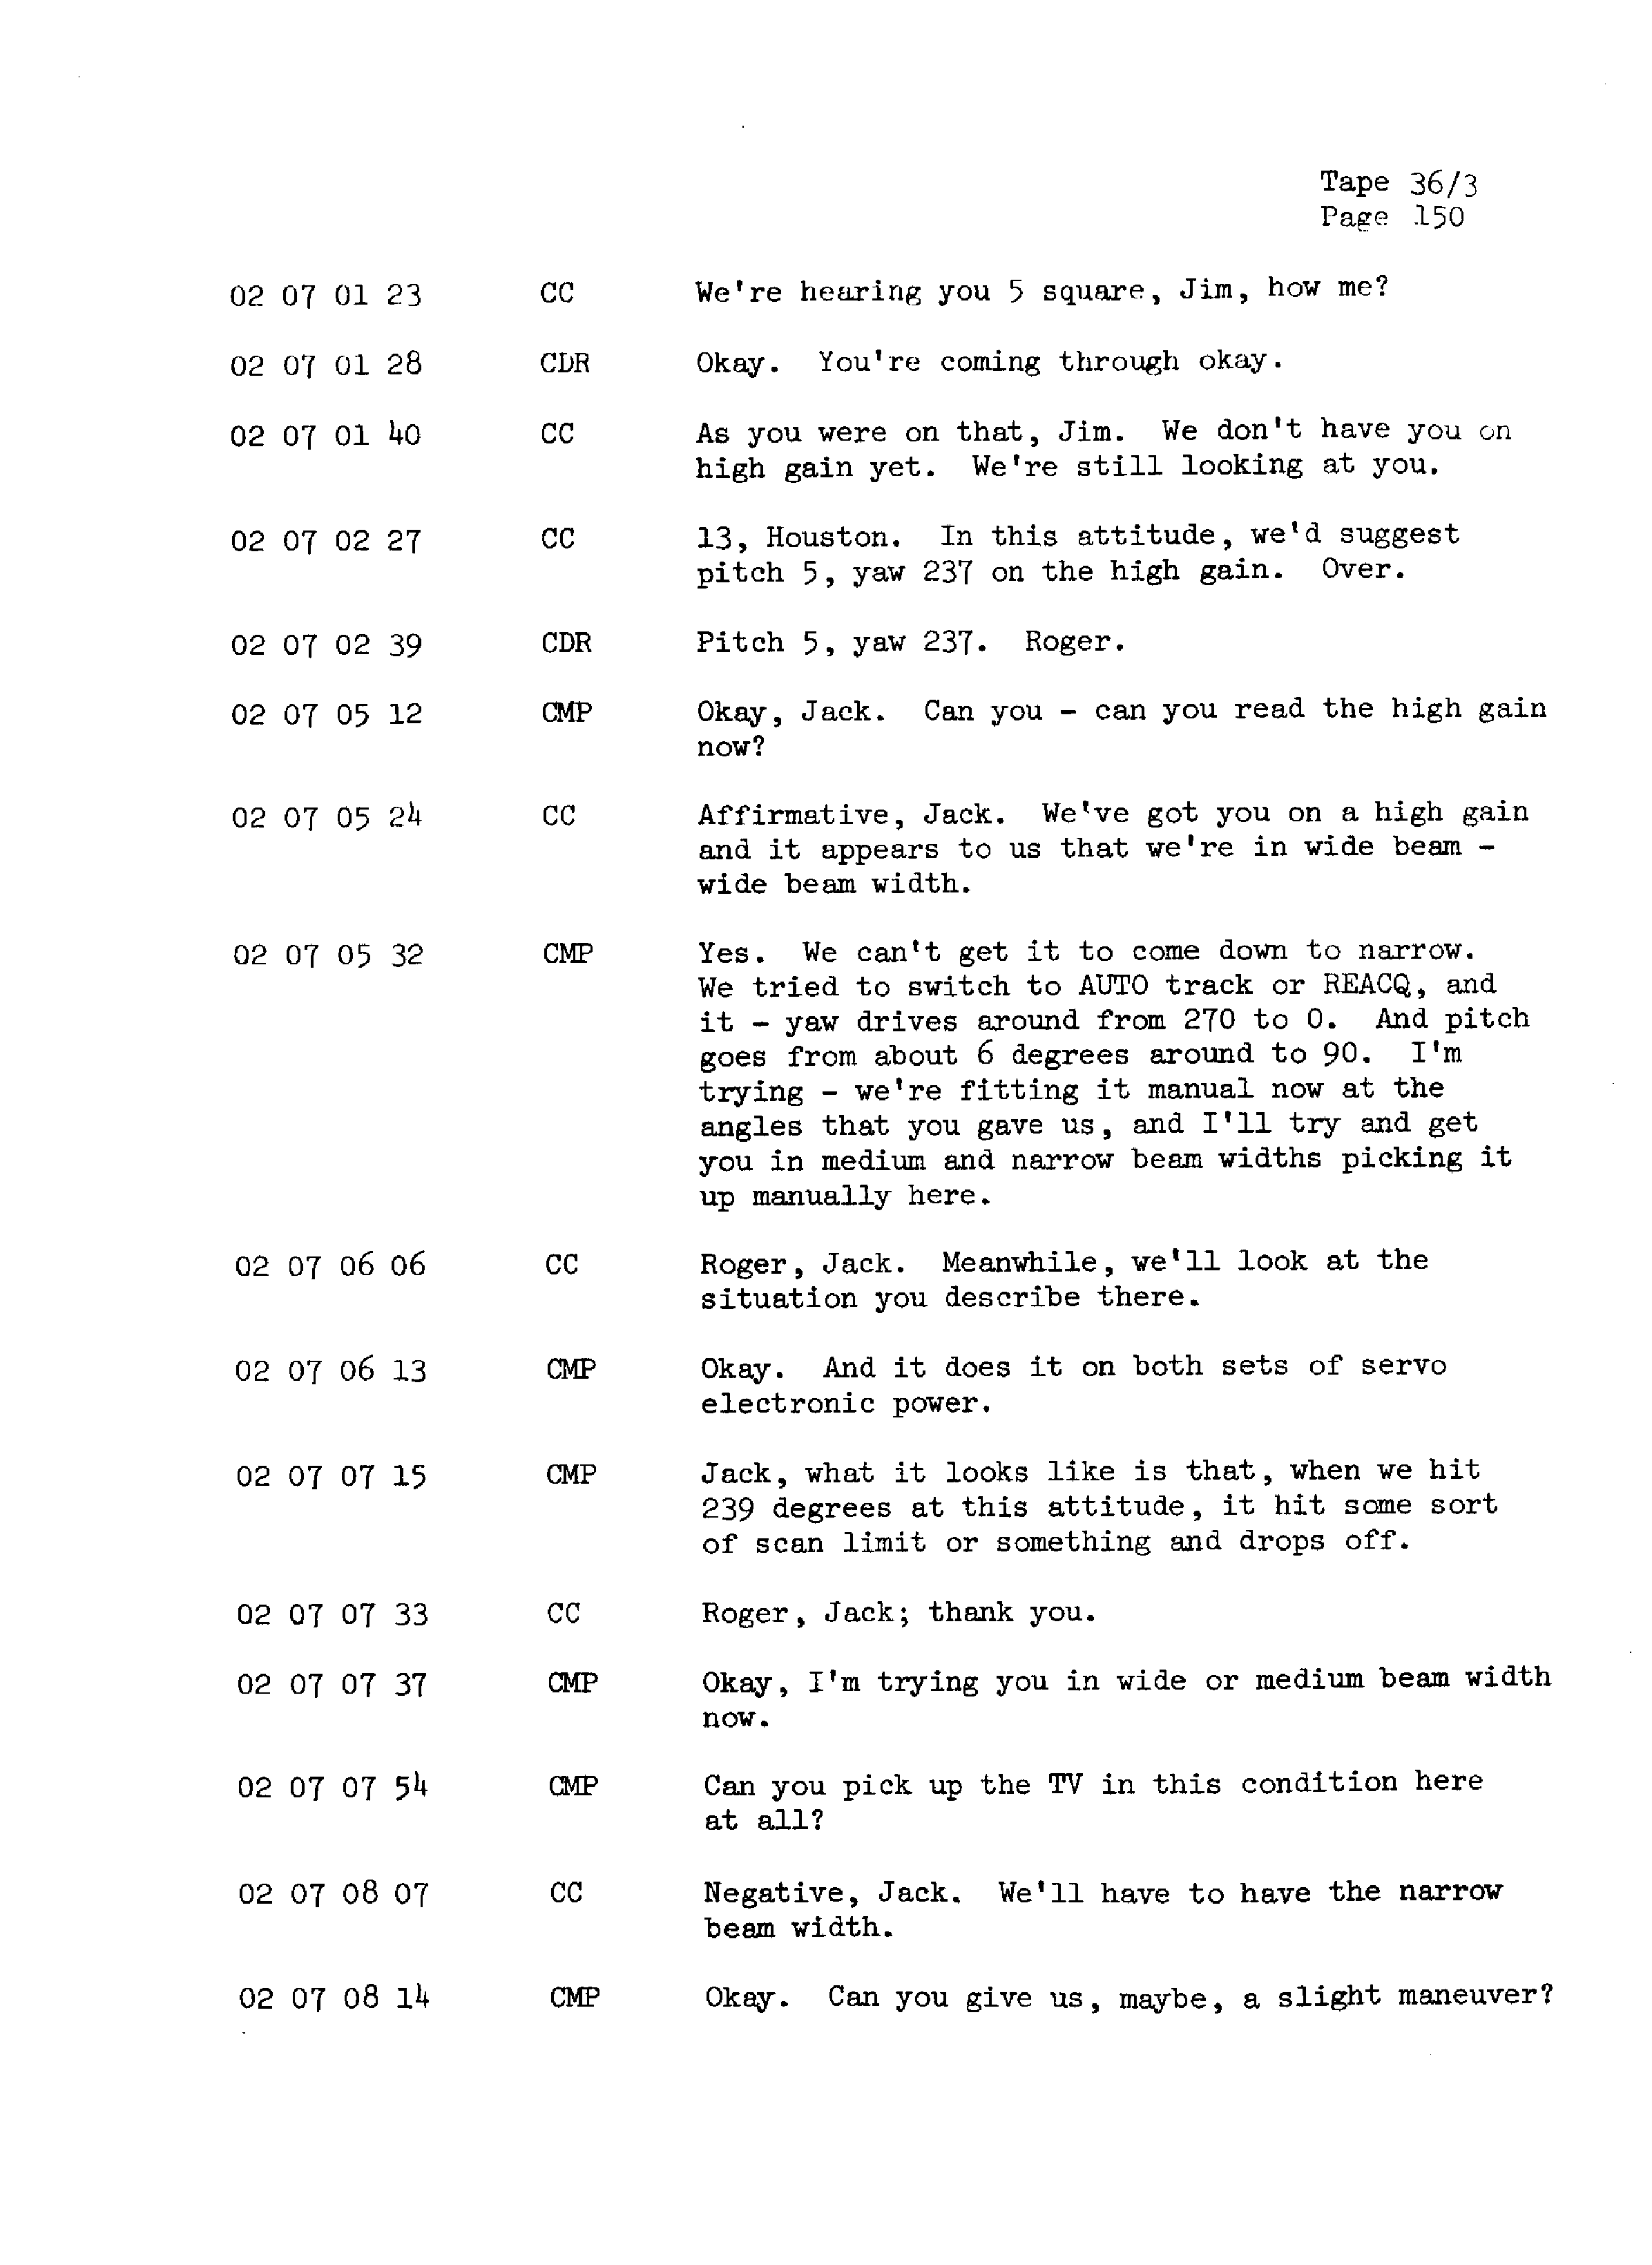 Page 157 of Apollo 13’s original transcript